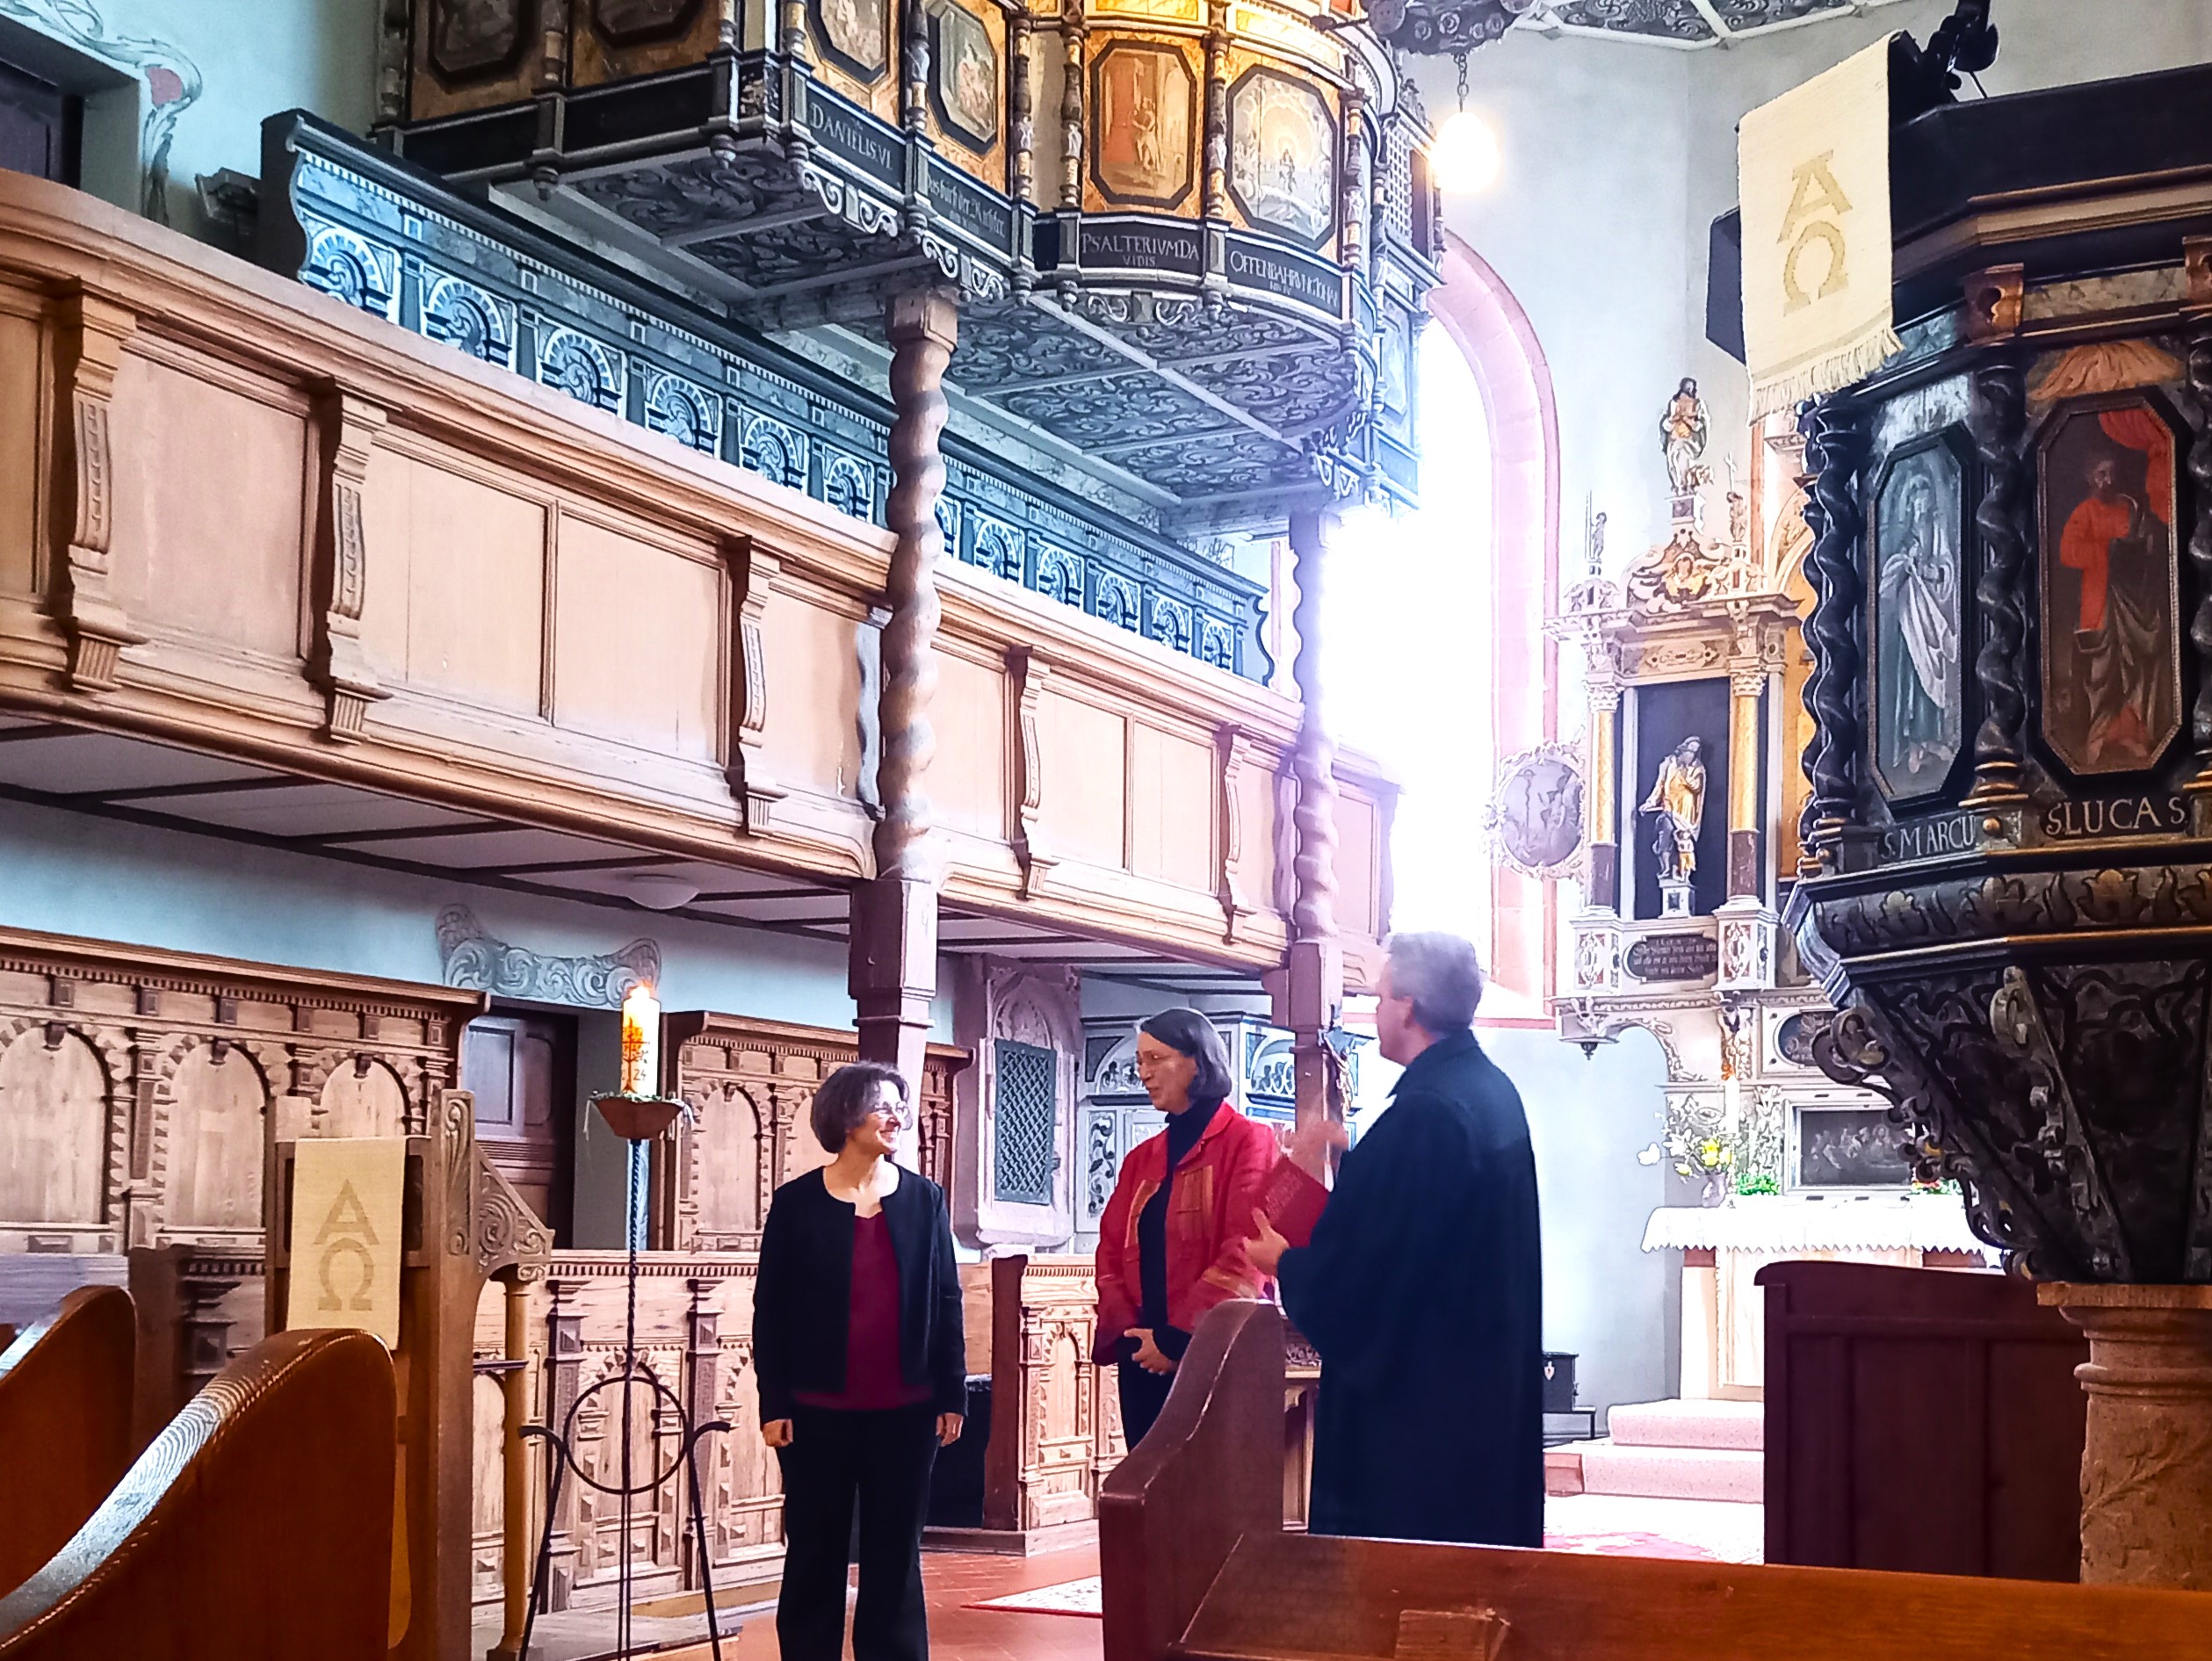 Frau Röder, Frau Coch und Herr Petry im Altarraum bei der Einführung von Frau Coch als Kirchenmusikerin